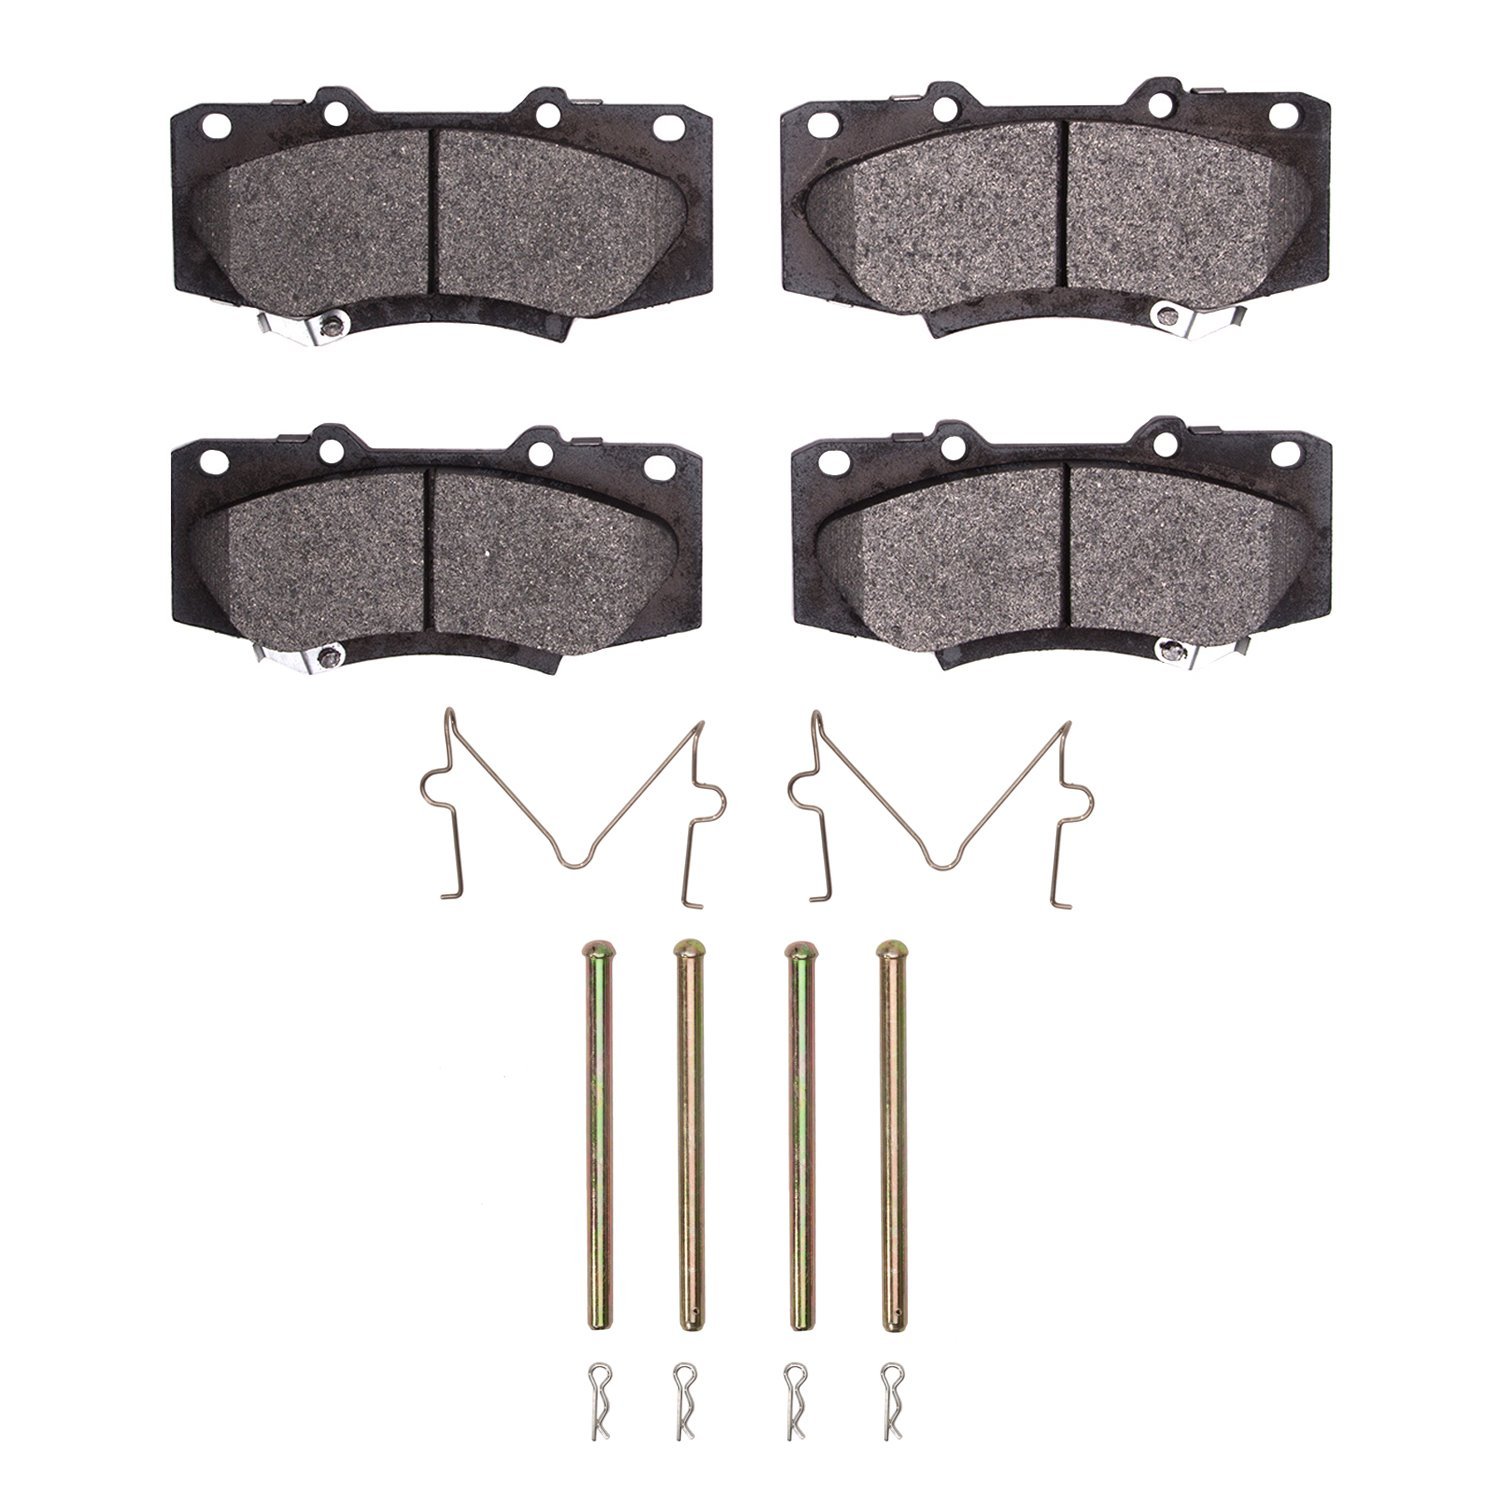 1310-1567-01 3000-Series Ceramic Brake Pads & Hardware Kit, 2013-2015 Lexus/Toyota/Scion, Position: Front